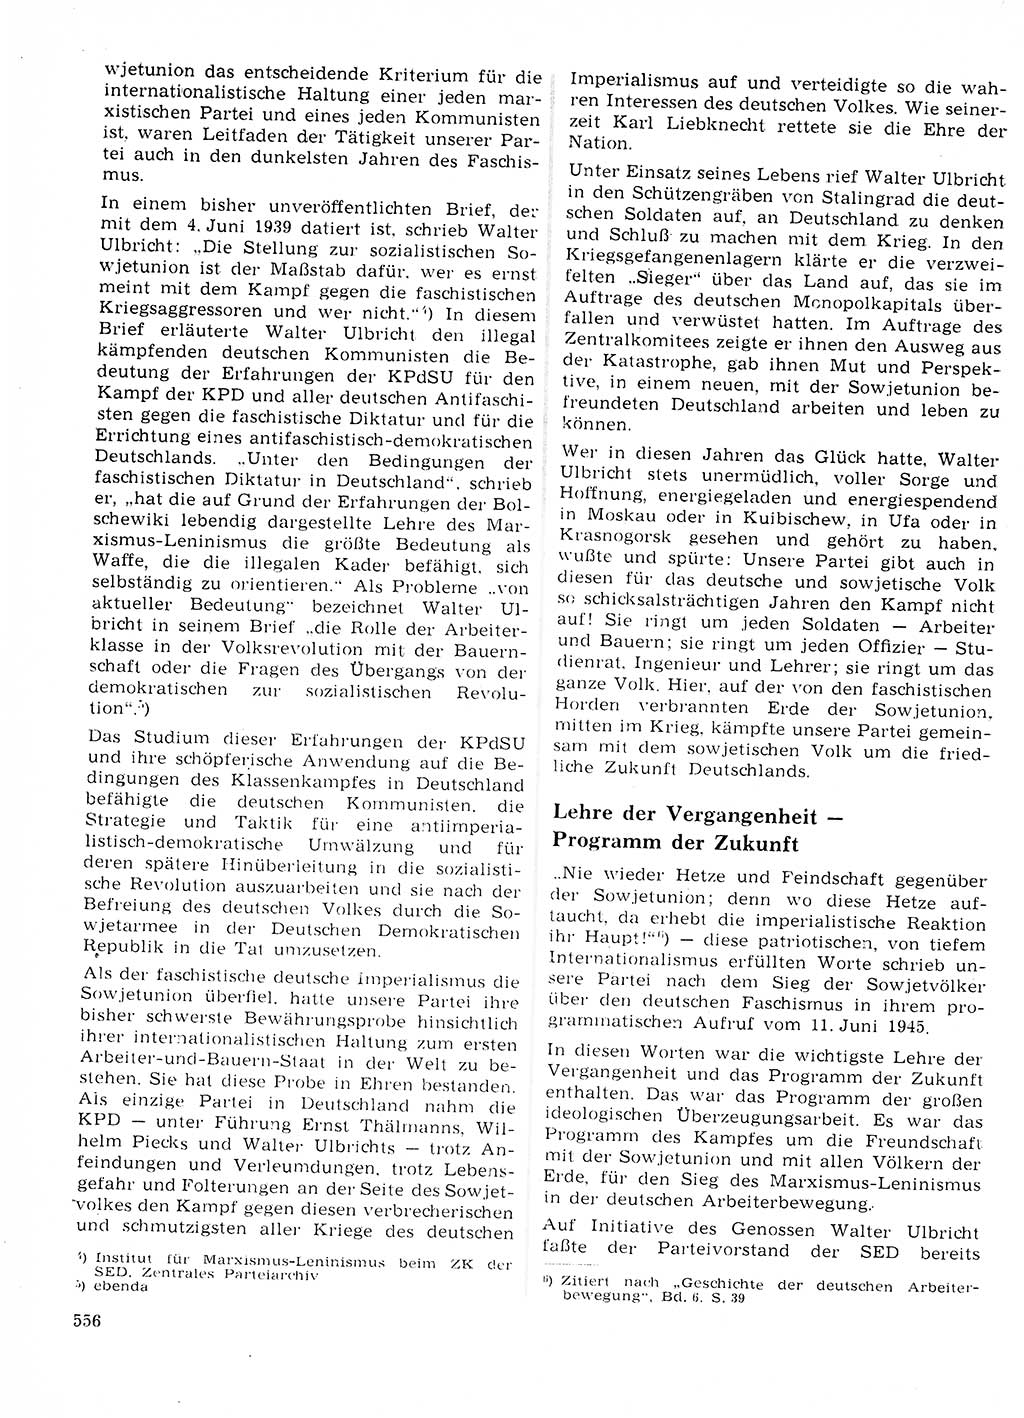 Neuer Weg (NW), Organ des Zentralkomitees (ZK) der SED (Sozialistische Einheitspartei Deutschlands) für Fragen des Parteilebens, 23. Jahrgang [Deutsche Demokratische Republik (DDR)] 1968, Seite 556 (NW ZK SED DDR 1968, S. 556)